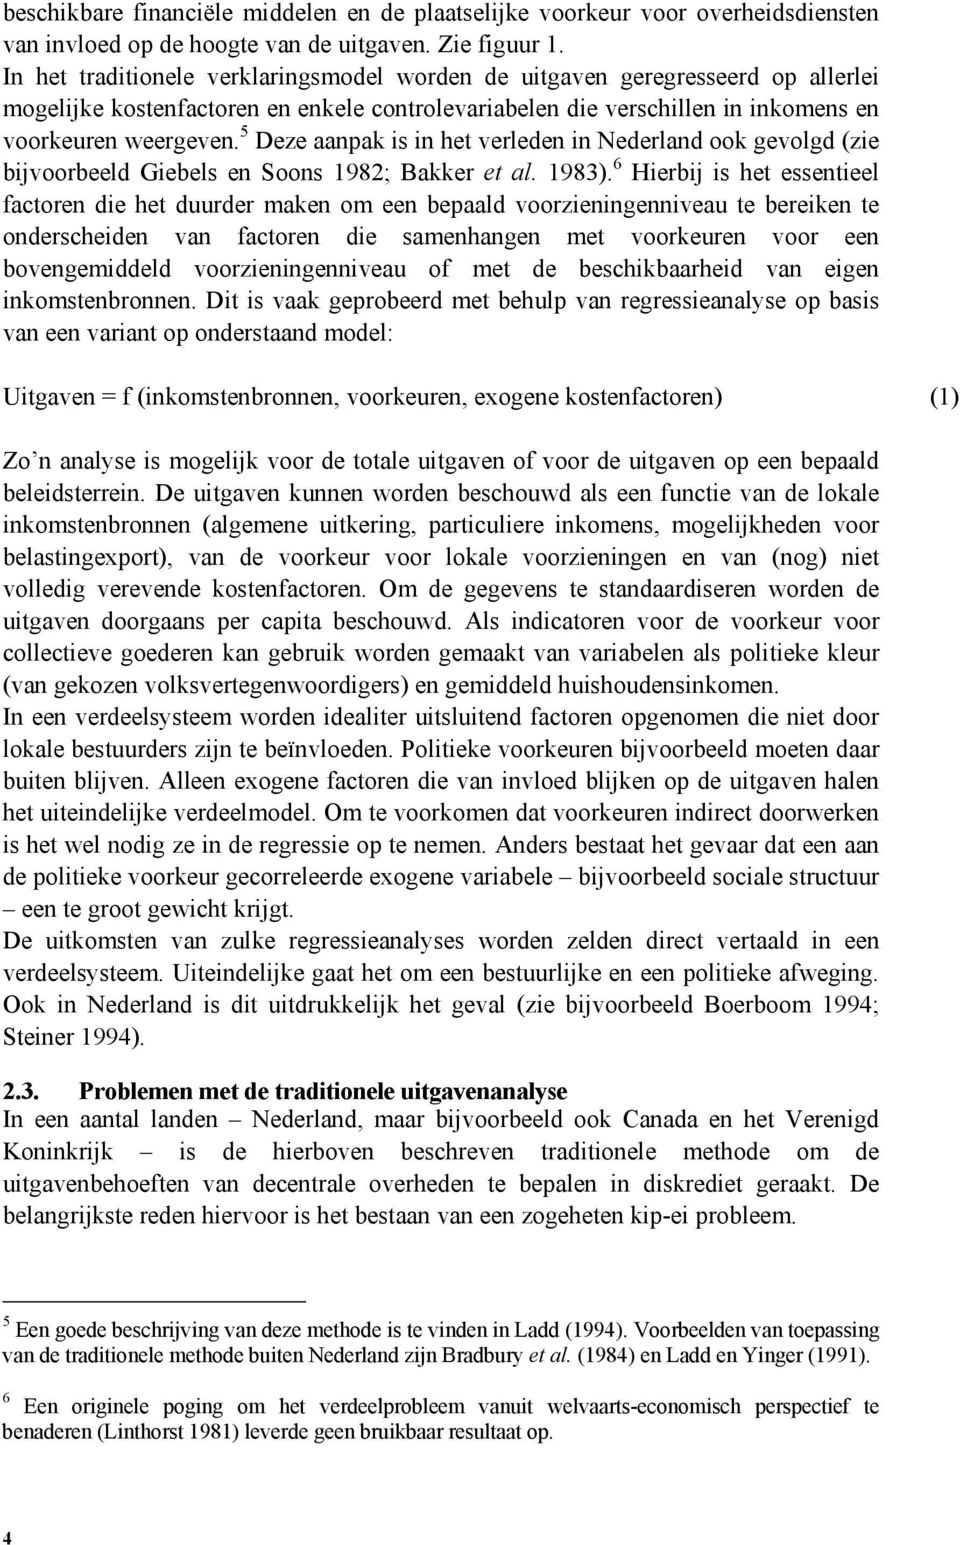 5 Deze aanpak is in het verleden in Nederland ook gevolgd (zie bijvoorbeeld Giebels en Soons 1982; Bakker et al. 1983).